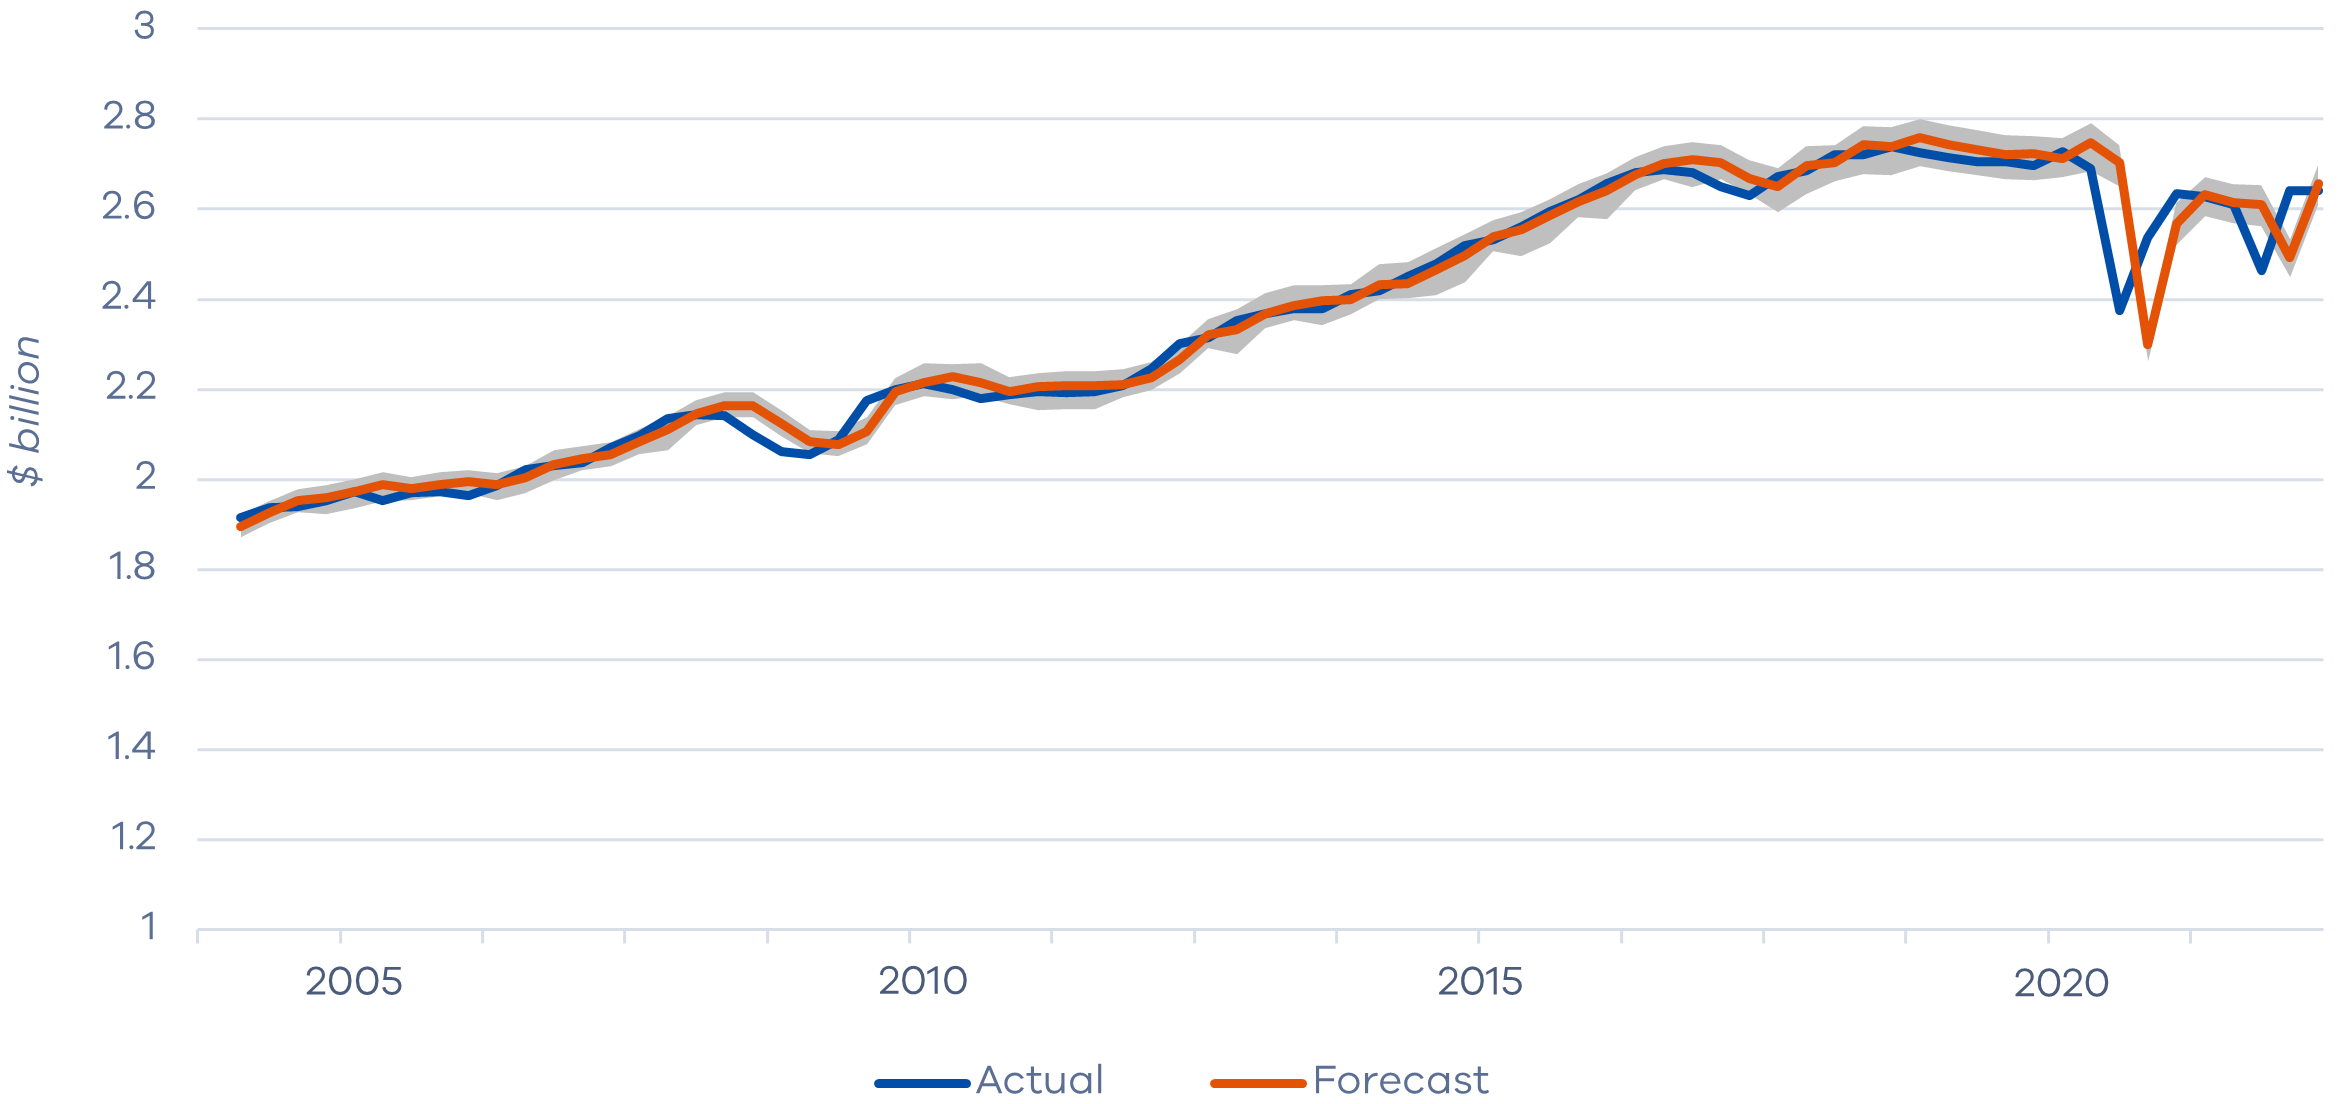 Figure-3 - Consumption forecast versus actual